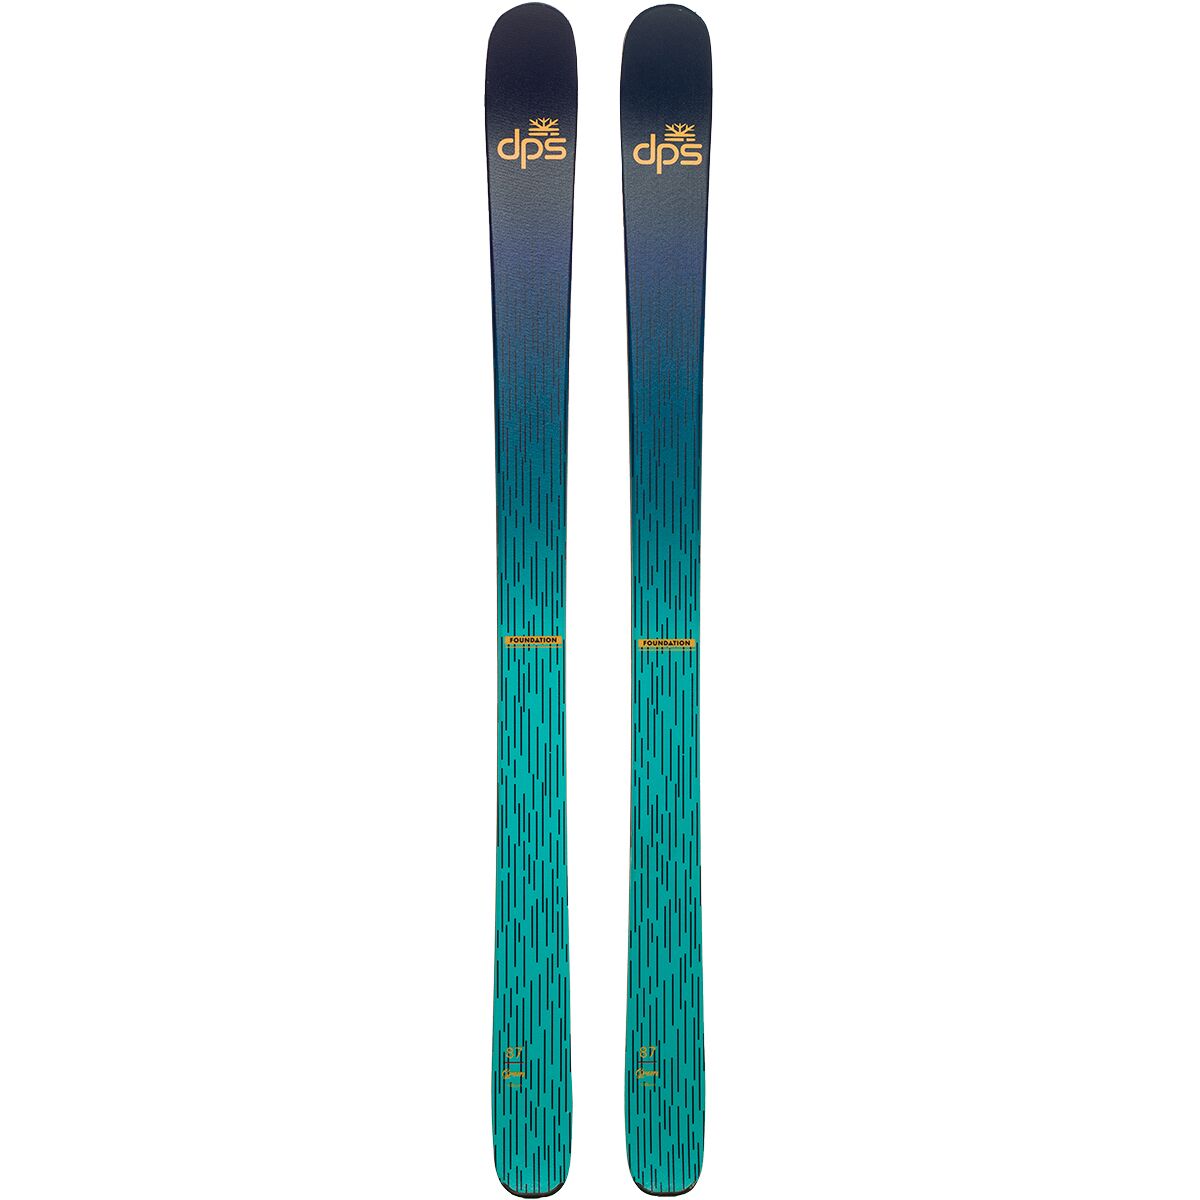 На лыжах с цветами. Лыжи dps Waller. Лыжи dps логотип. Горные лыжи dps Wailer Grom 87. Skis 2022